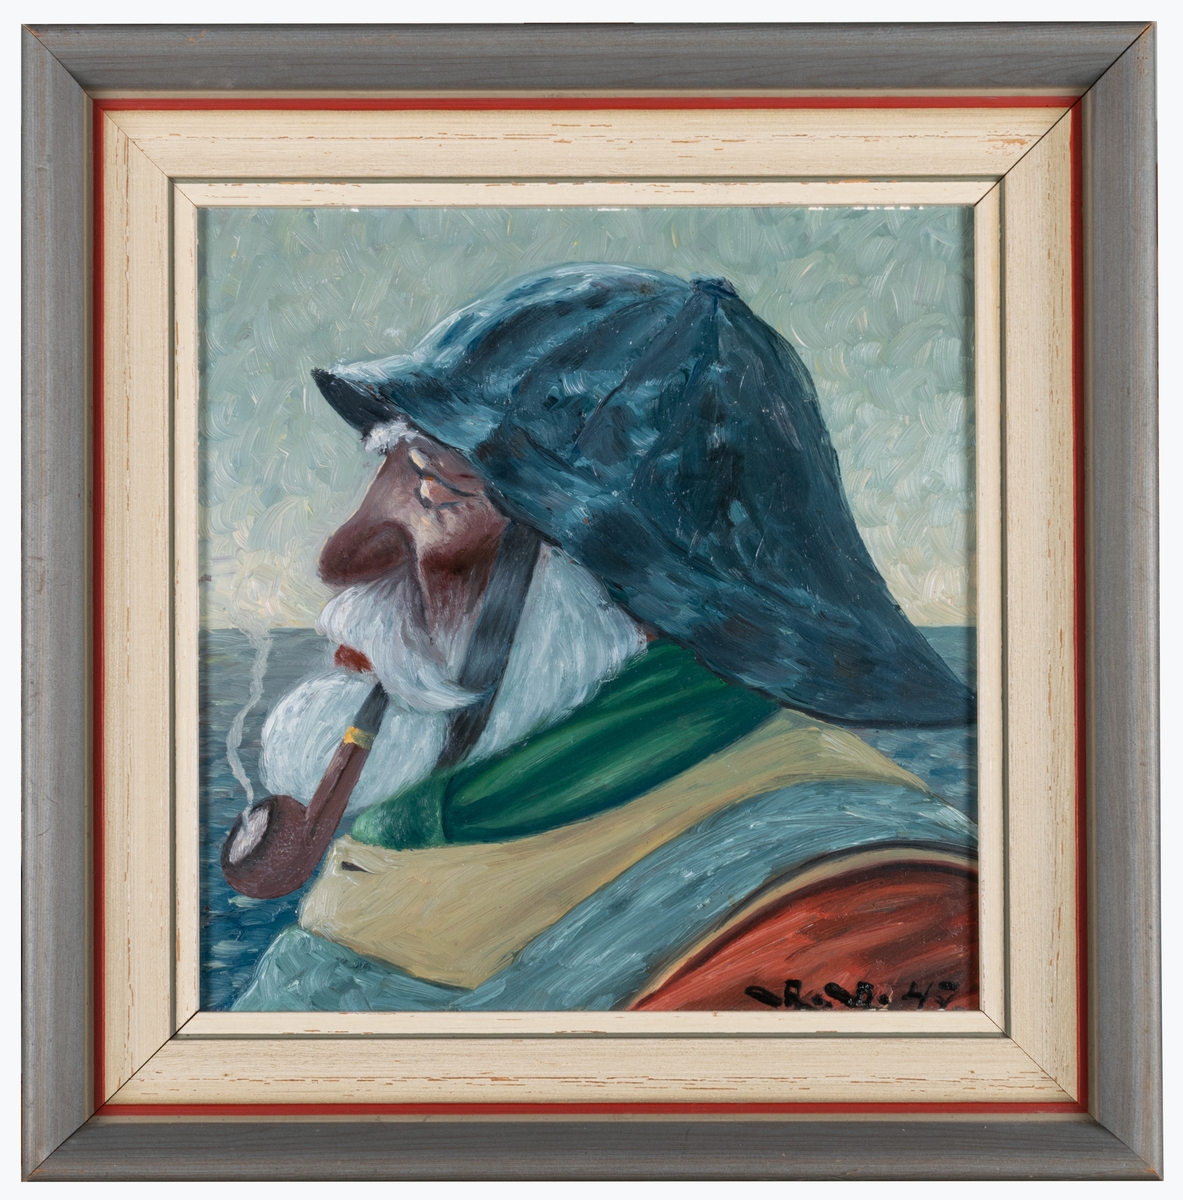 Fiskargubbe med helskägg, pipa i munnen och sydväst avbildad i vänsterprofil med hav i bakgrunden. Ett traditionellt motiv som bygger på den tyske marinmålaren Harry Haerendels välkända målning från ca 1920 "Der alte Seebär" (Den gamle sjöbjörnen).